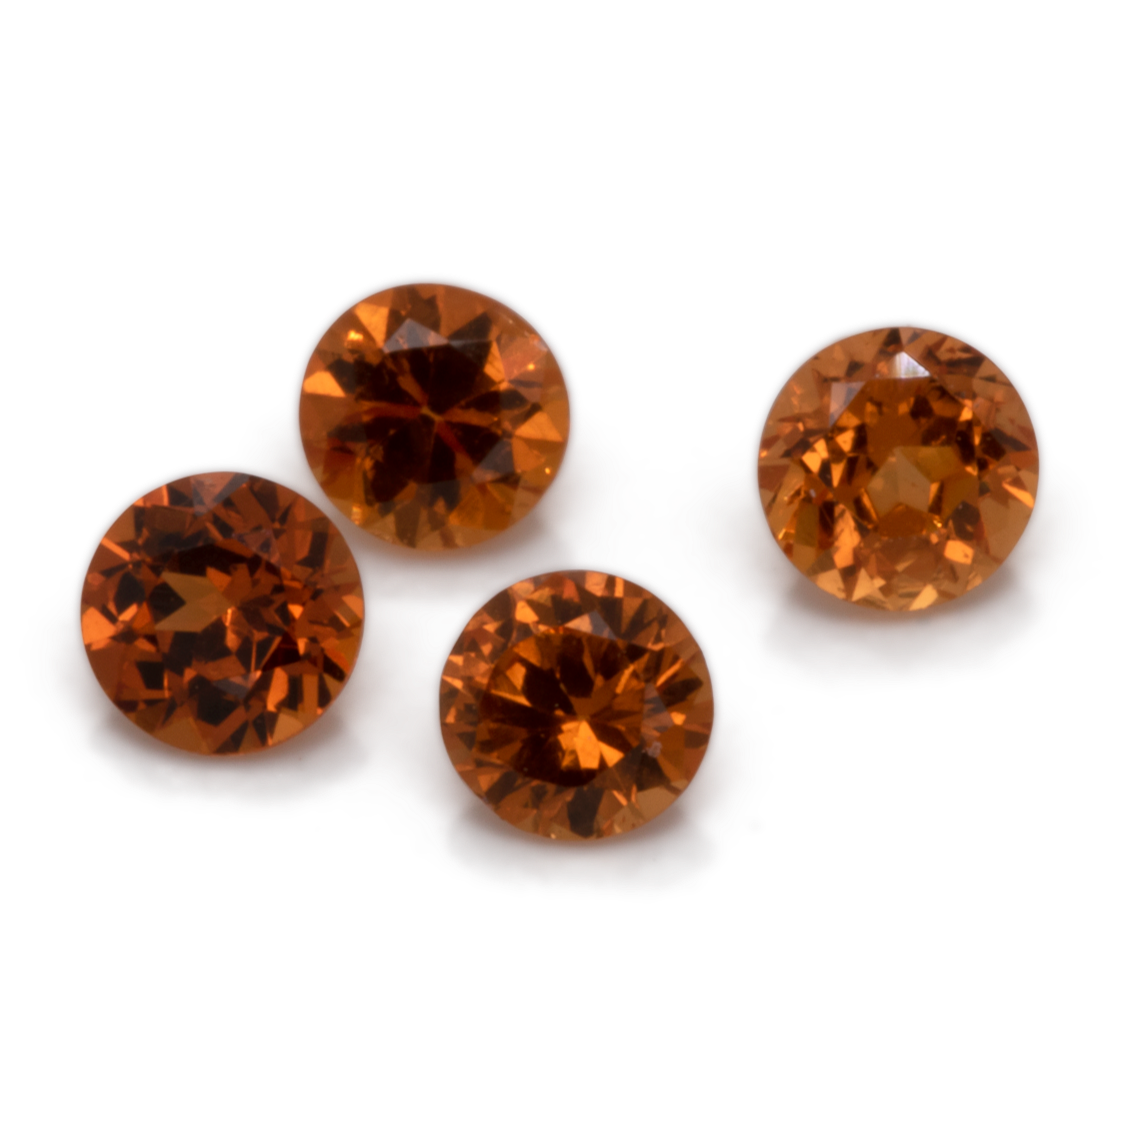 Mandarin Granat - orange, rund, 2.5x2.5 mm, 0,07-0,09 cts, Nr. MG35001